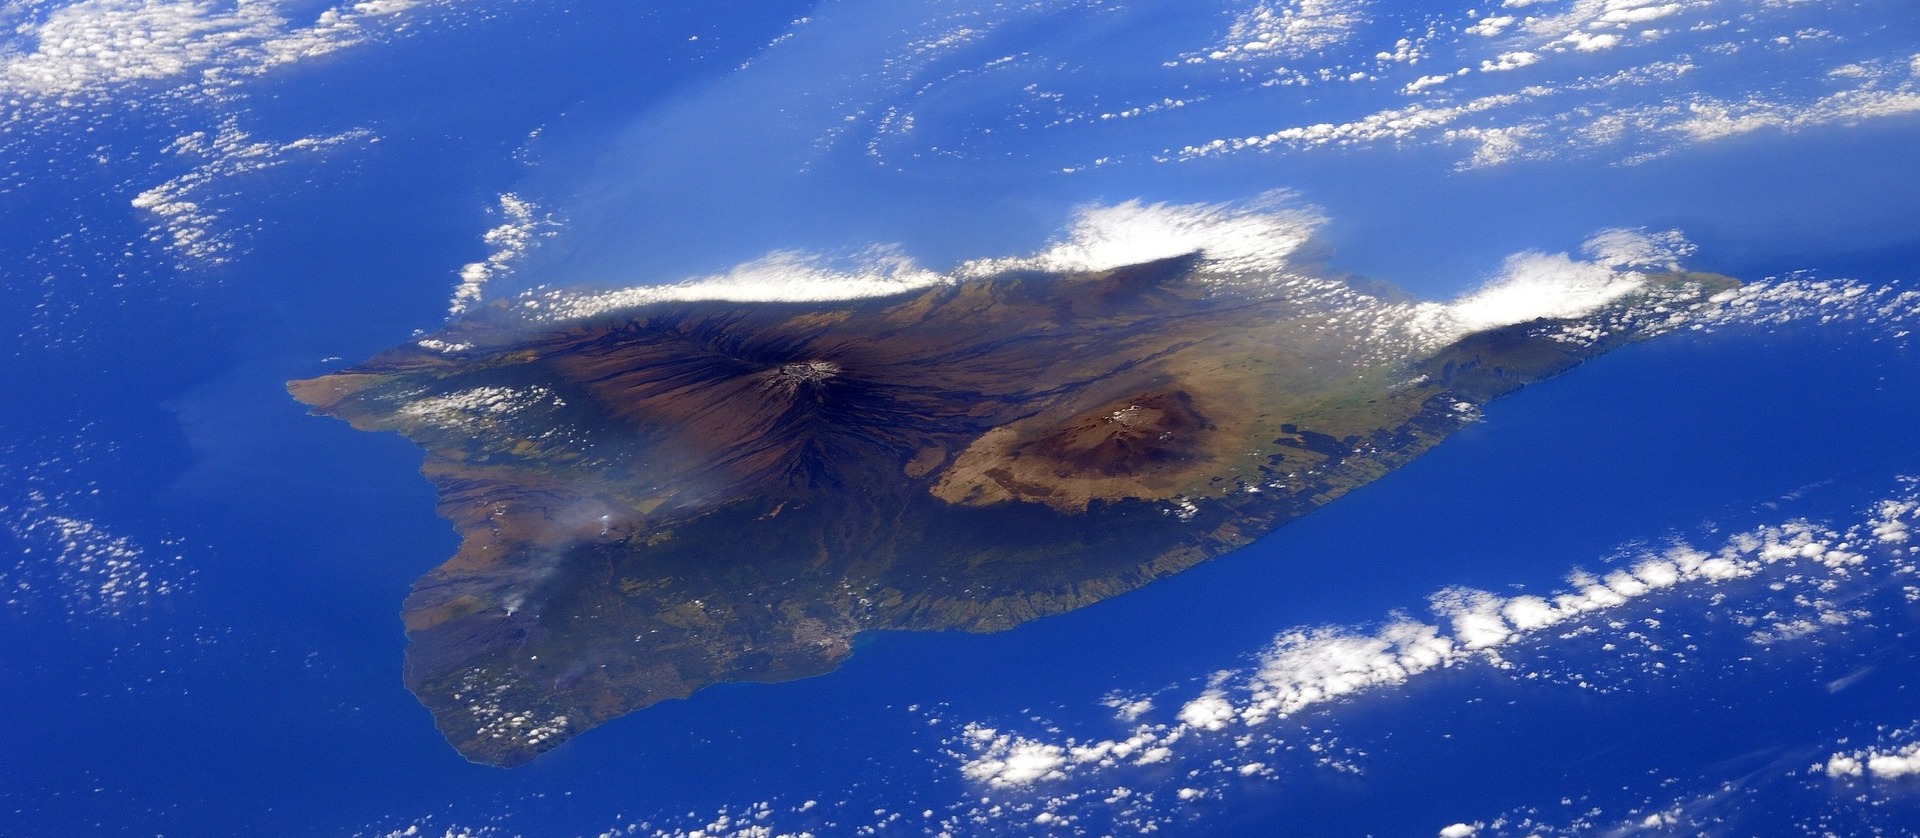 Hawaii widziana z kosmosu